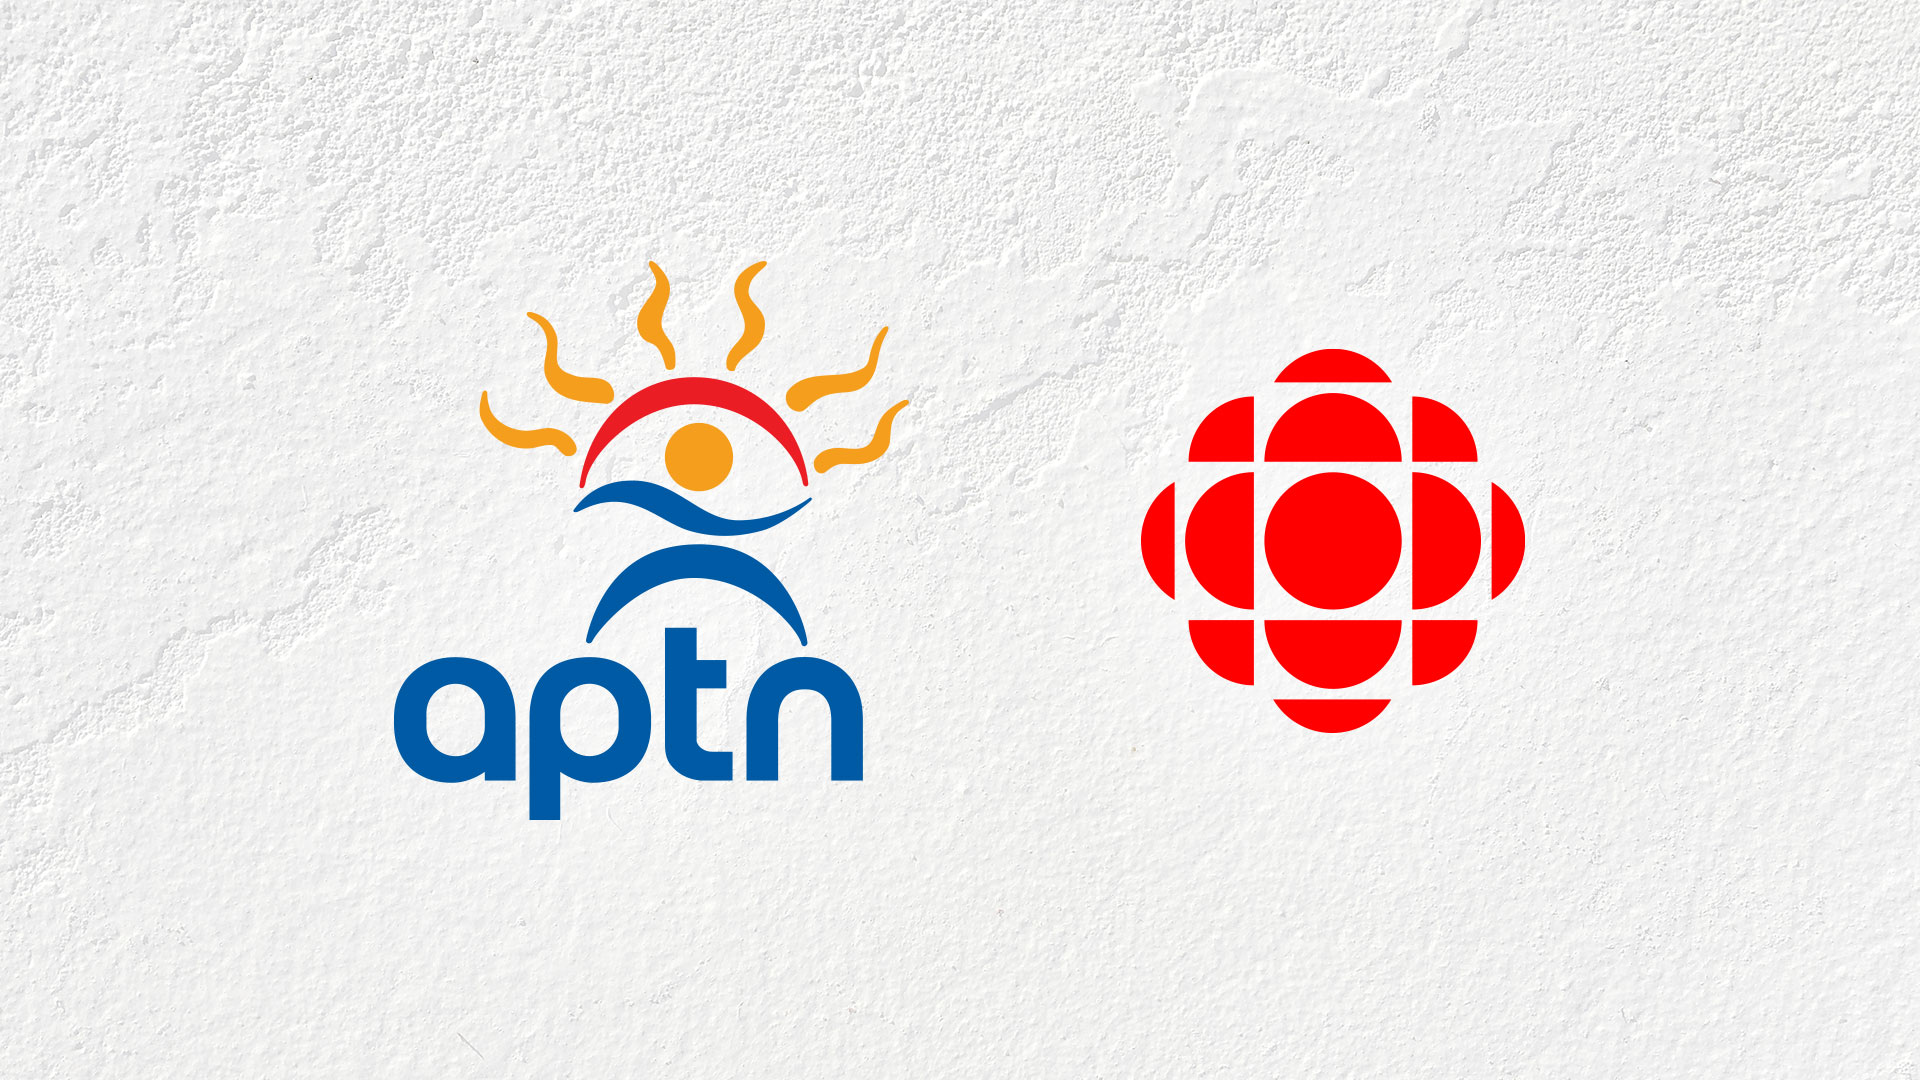 Logos d’APTN et de CBC/Radio-Canada sur un fonc blanc.